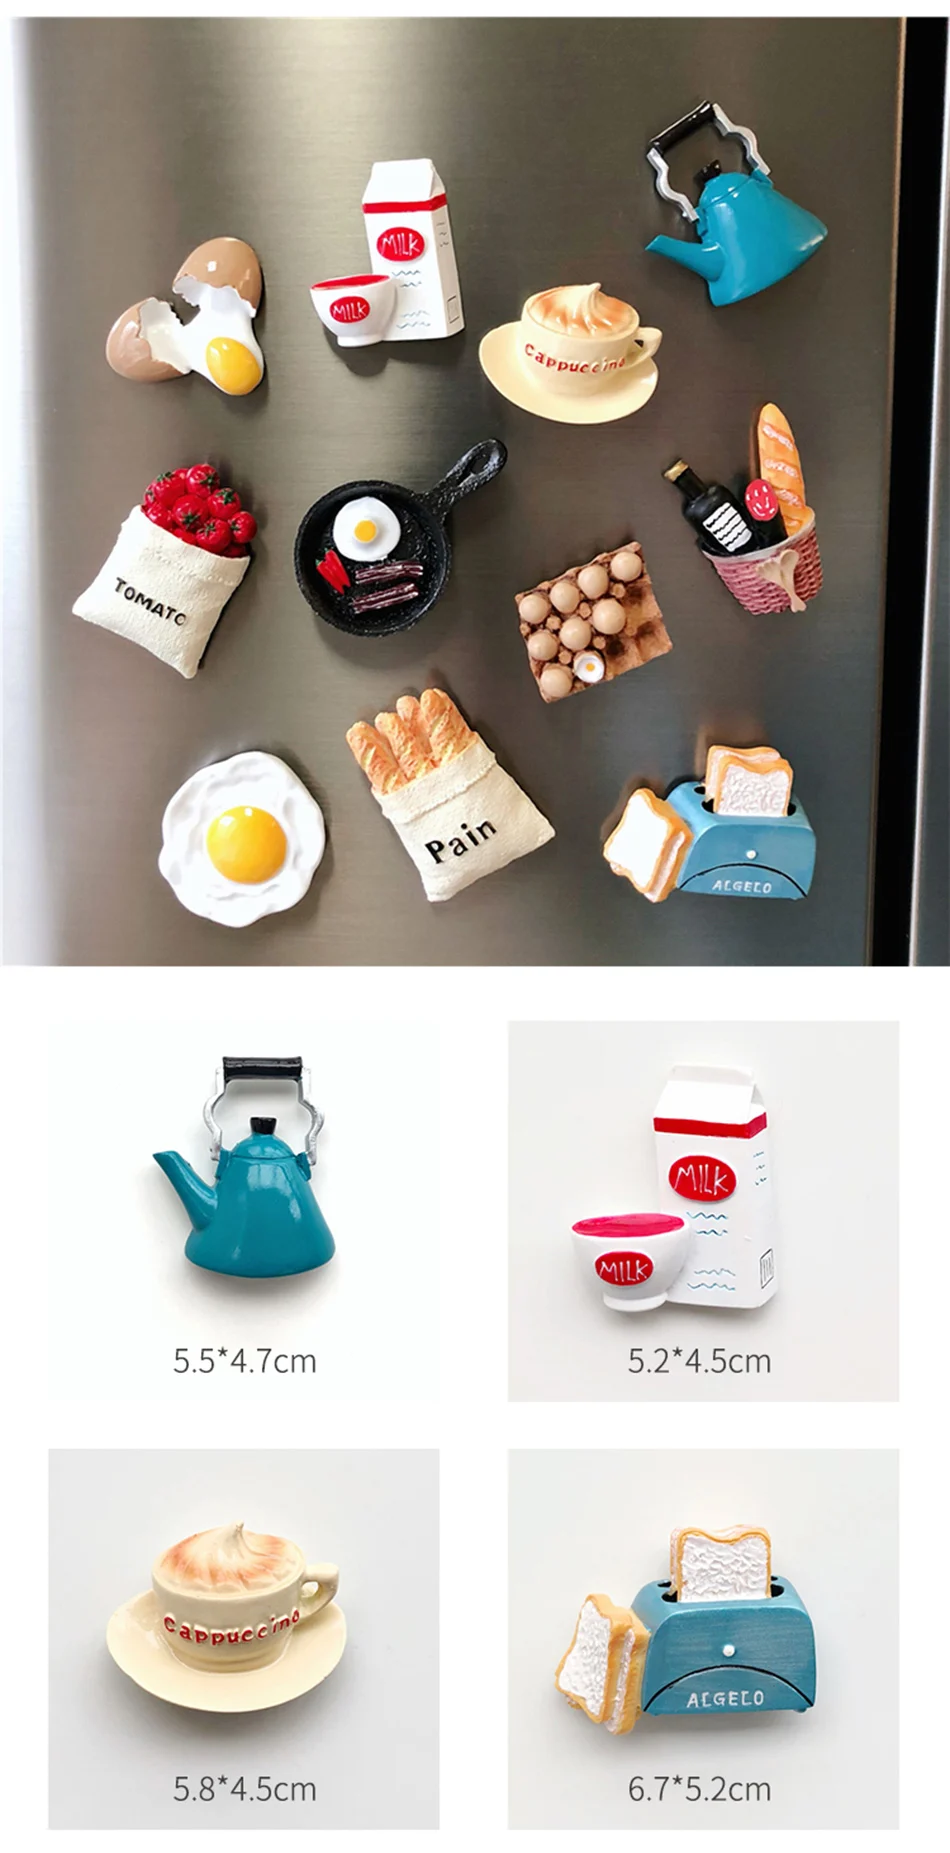 Boxi новые 3D магниты для холодильника стикер милые холодильники магнит декор из смолы, в форме продуктов питания форма молоко бекон детский магнит на холодильник сувенир подарки